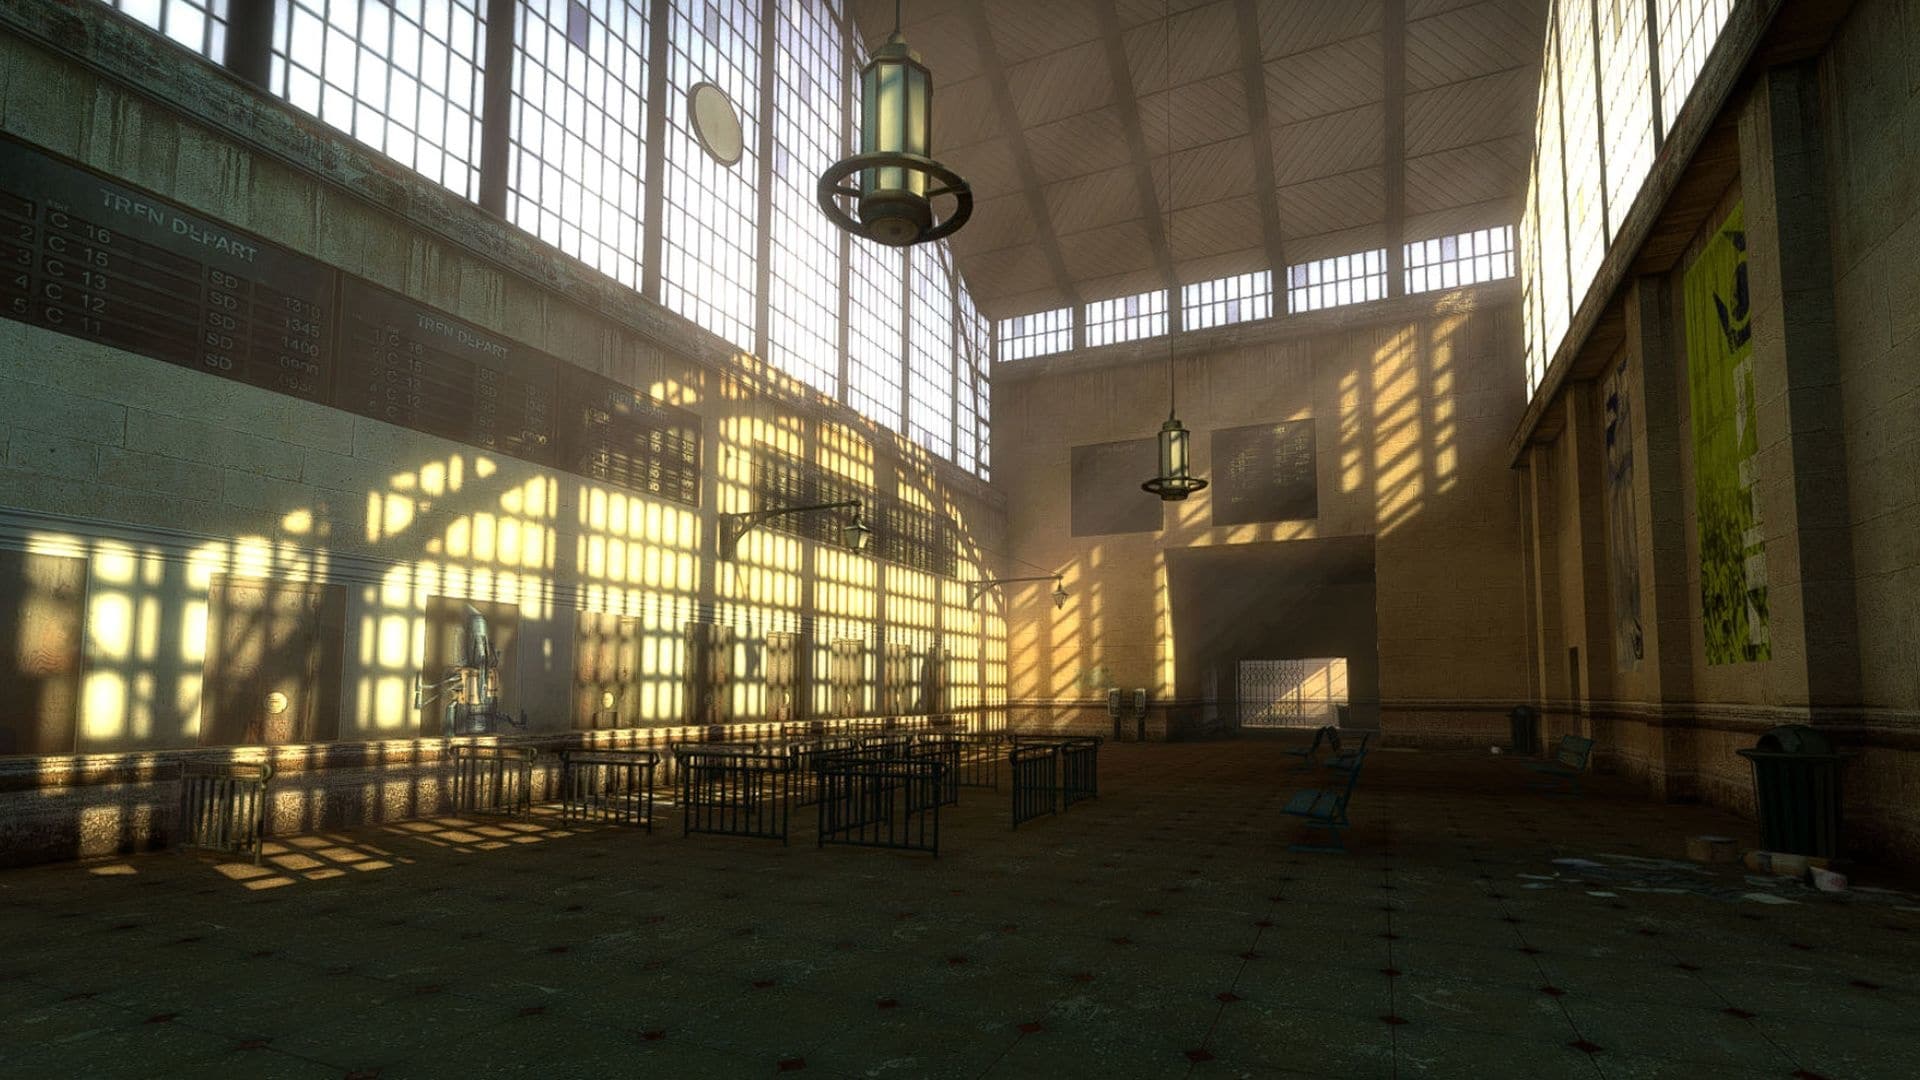 (Do budoucna tým modifikace slíbil kromě implementace epizod Half-Life také aktualizaci grafiky, která by měla mimo jiné optimalizovat textury a poněkud zastaralé osvětlení hry.)